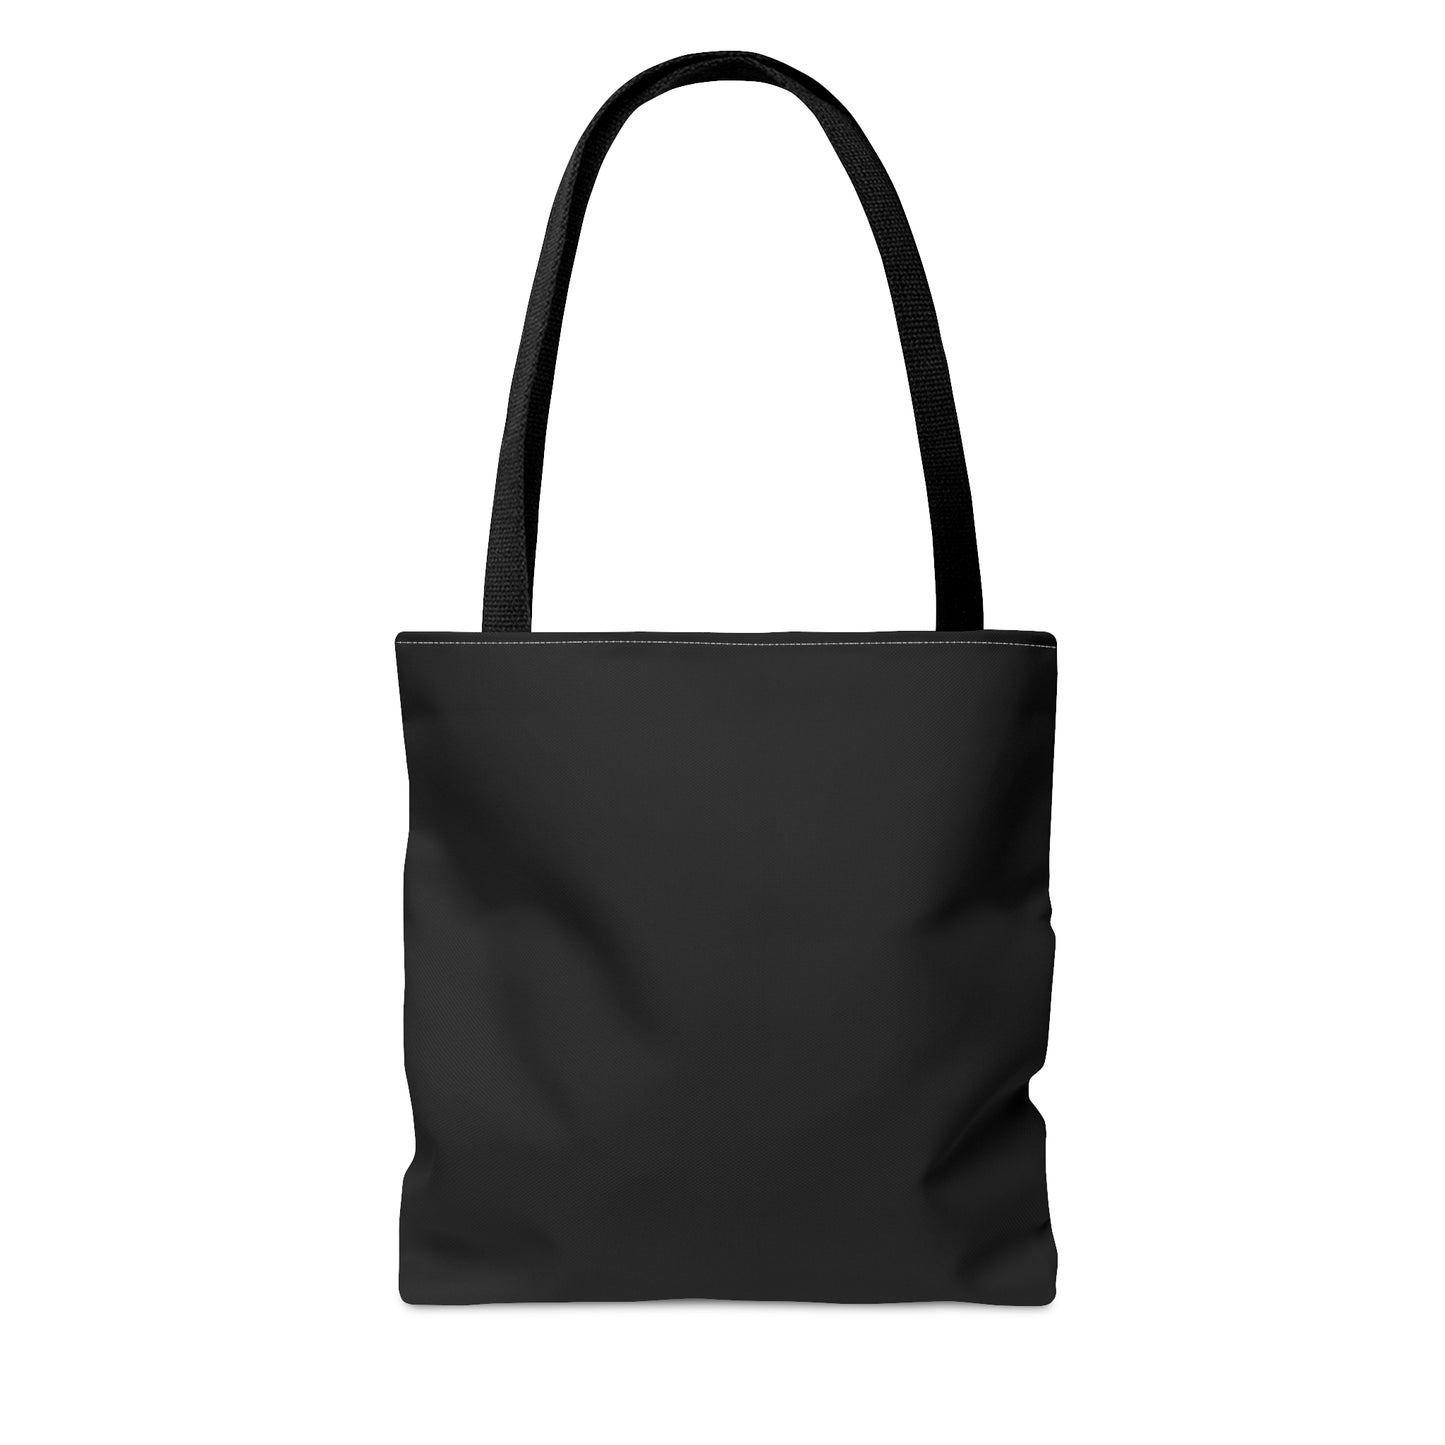 Santa Clara Tote Bag (Black)